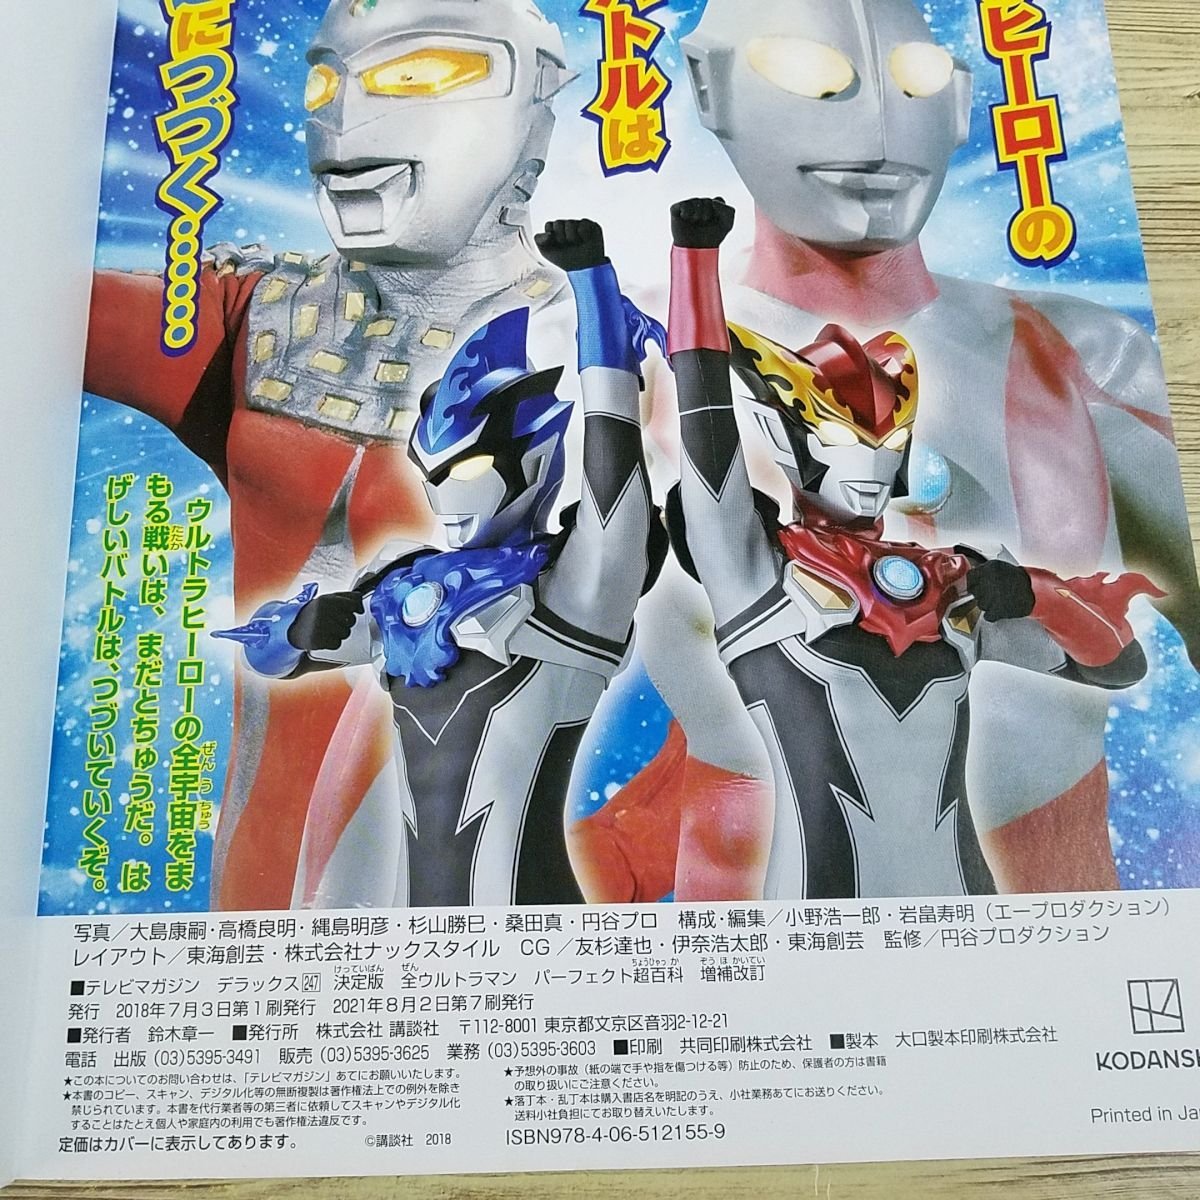  спецэффекты серия [ решение версия все Ultraman Perfect супер различные предметы больше . модифицировано .] первое поколение Ultraman из Ultraman R|B до телевизор журнал Deluxe [ отправка 